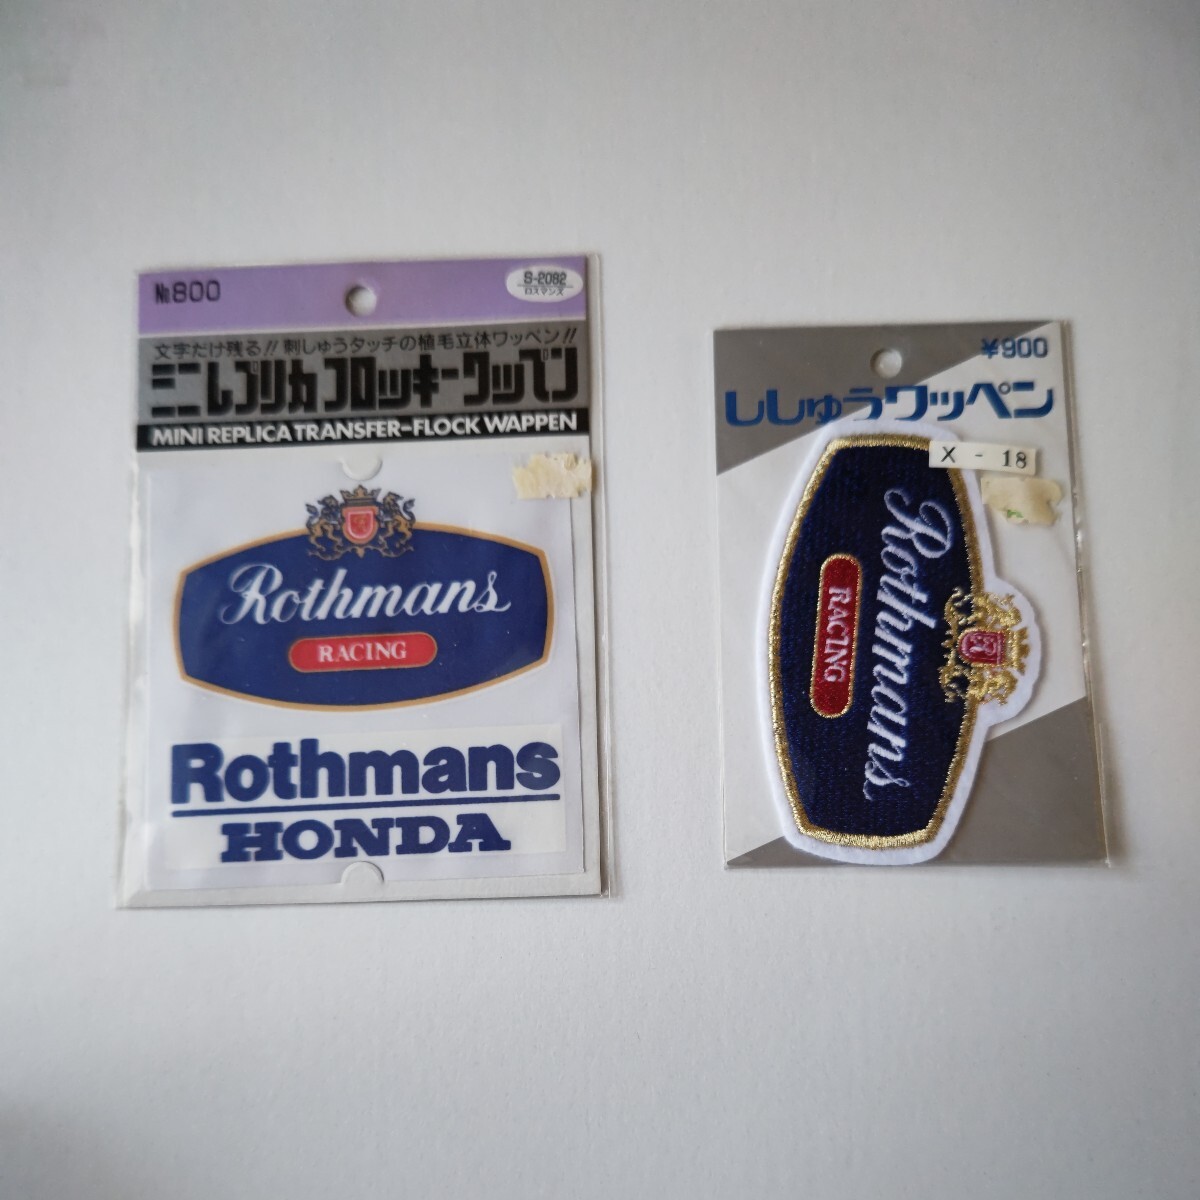 ホンダ ロスマンズ ワッペンHONDA Rothmans RACINGワッペン2種類 ロゴ刺繍ワッペン_画像1